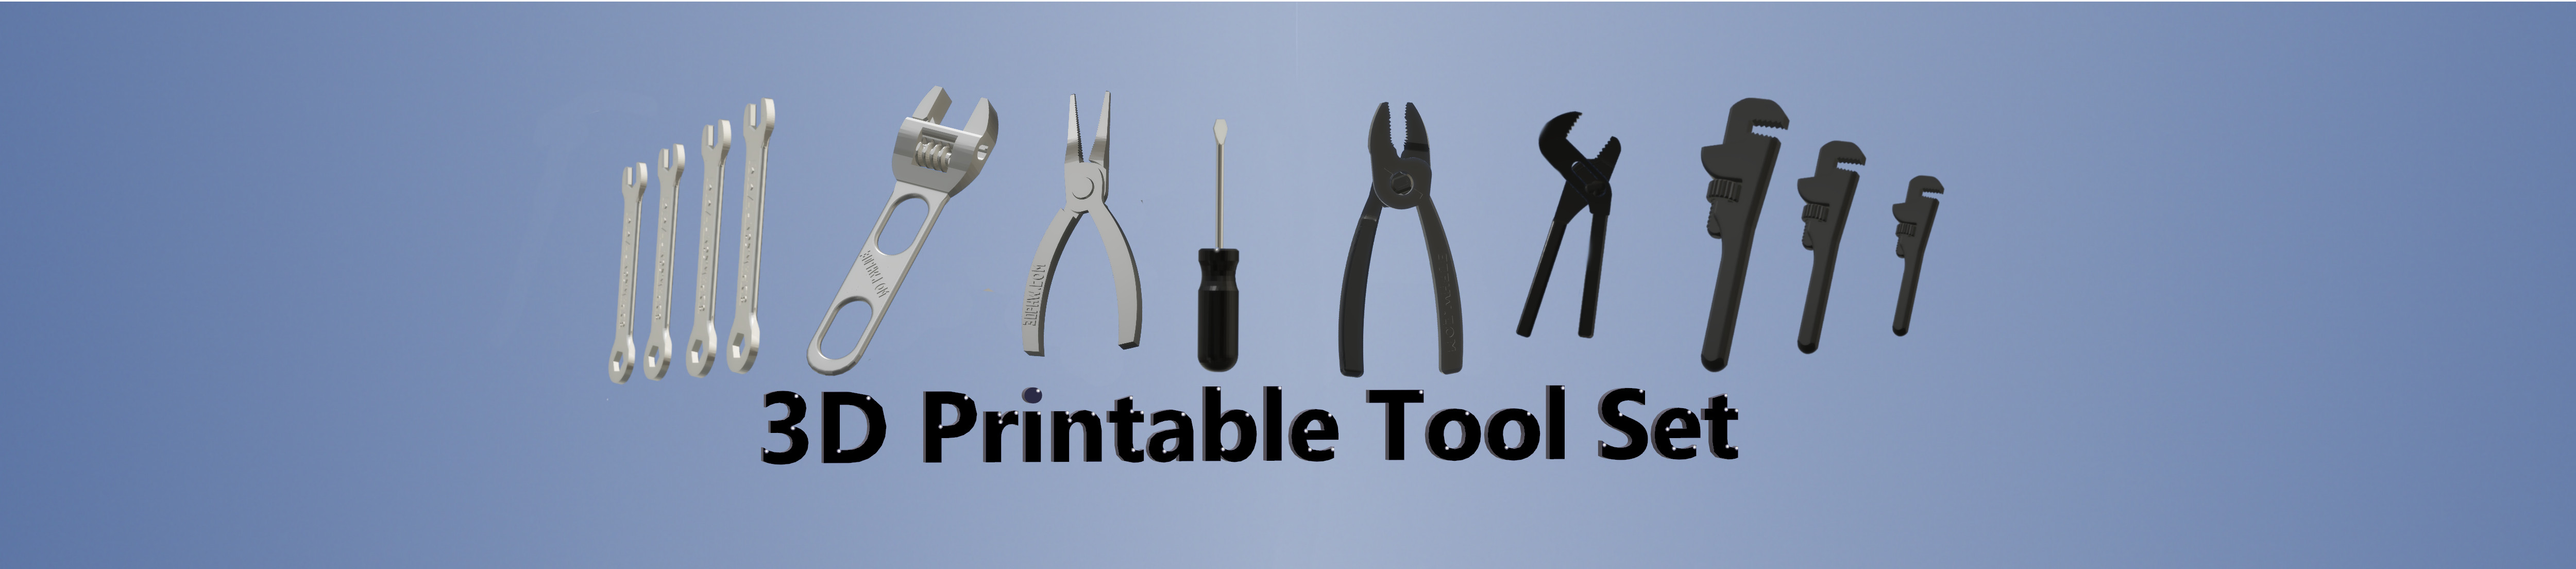 3d printable tool set